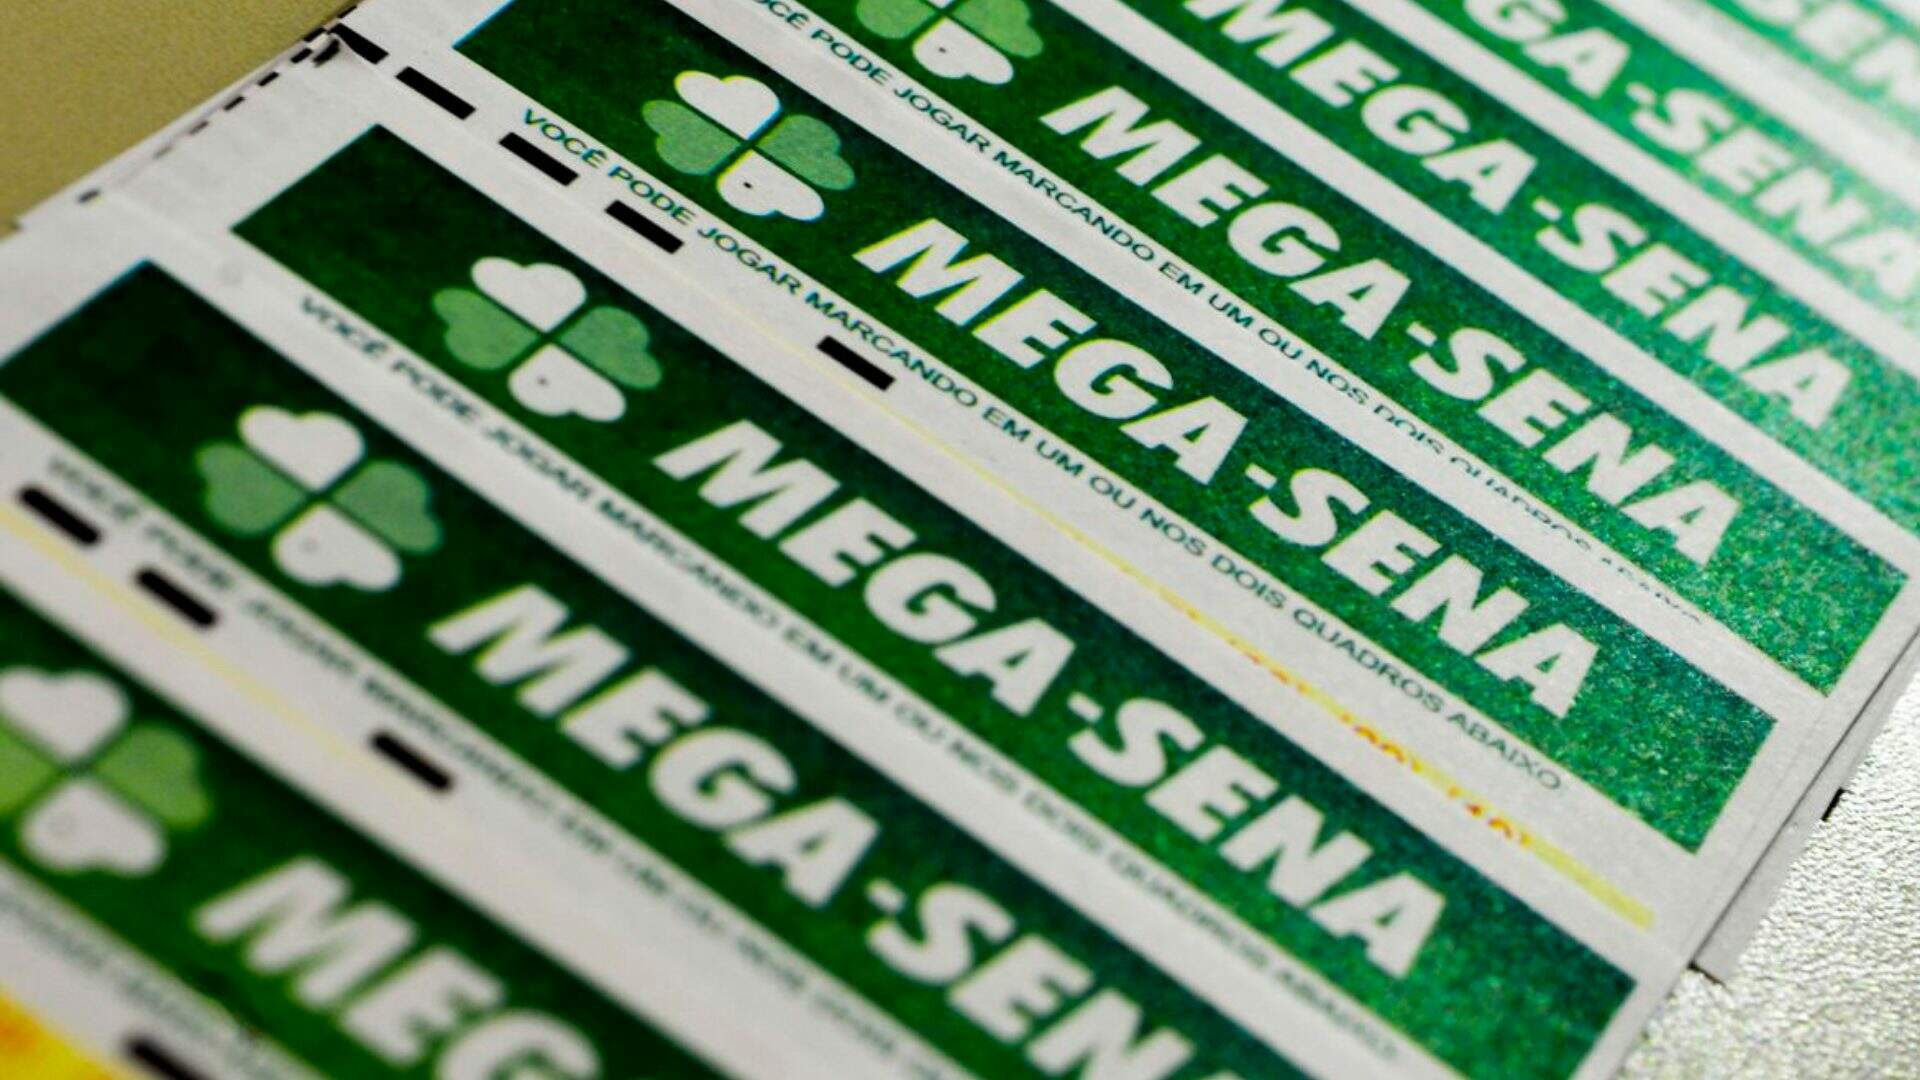 Mega-Sena acumula e próximo concurso deve pagar R$ 8 milhões